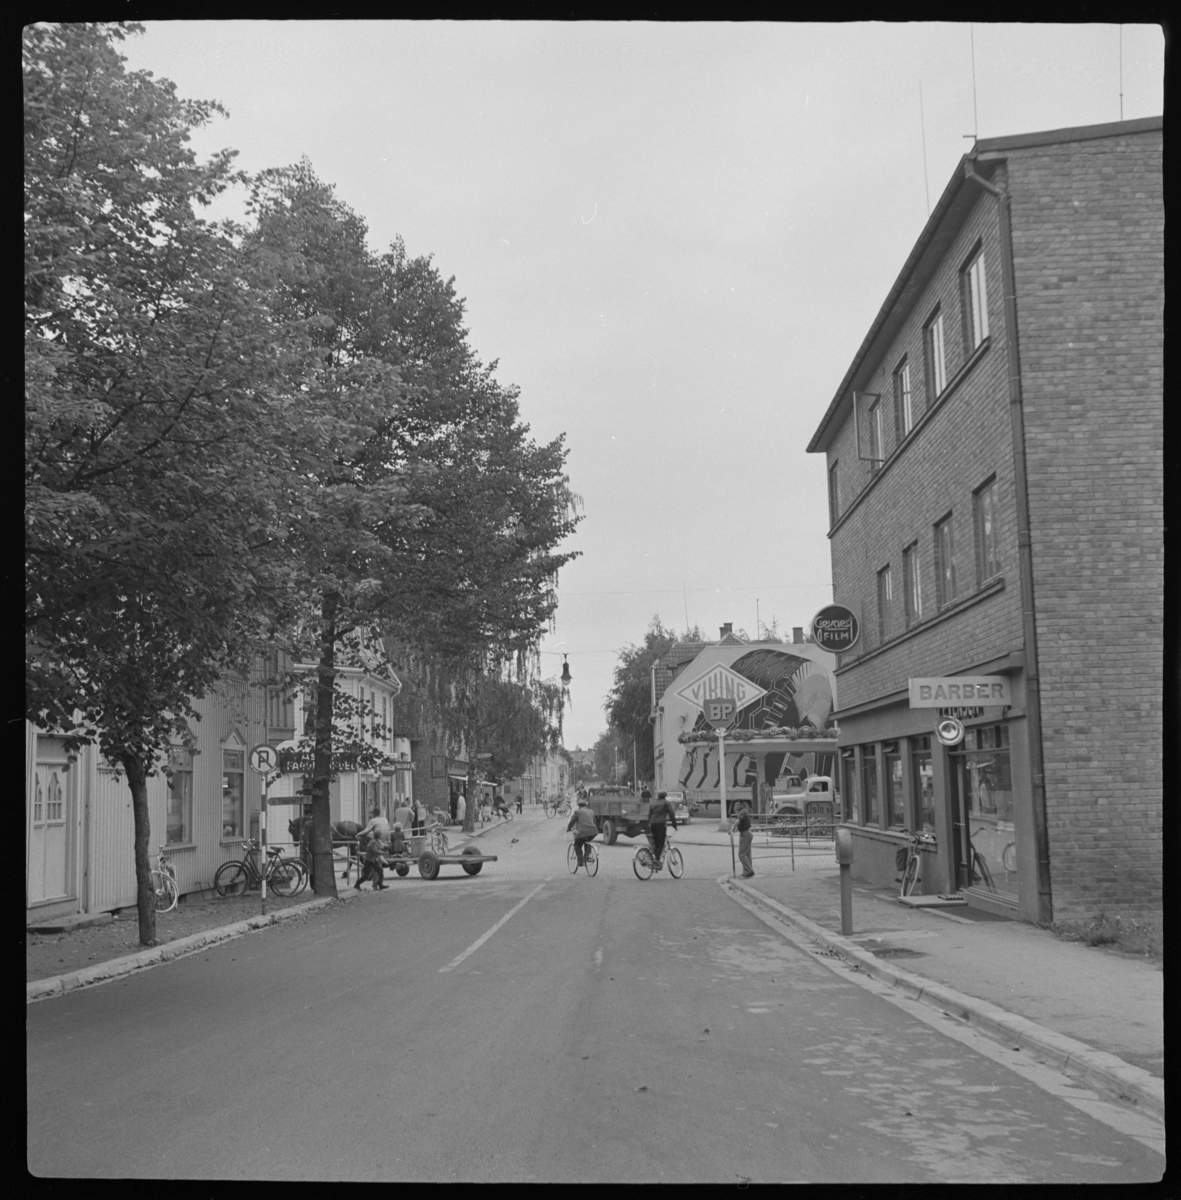 Askim i Indre Østfold kommune, Skolegata med videreføring i Rådhusgata, tidligere Eidsbergveien. Syklister, hestekjøretøy og biler i gata.